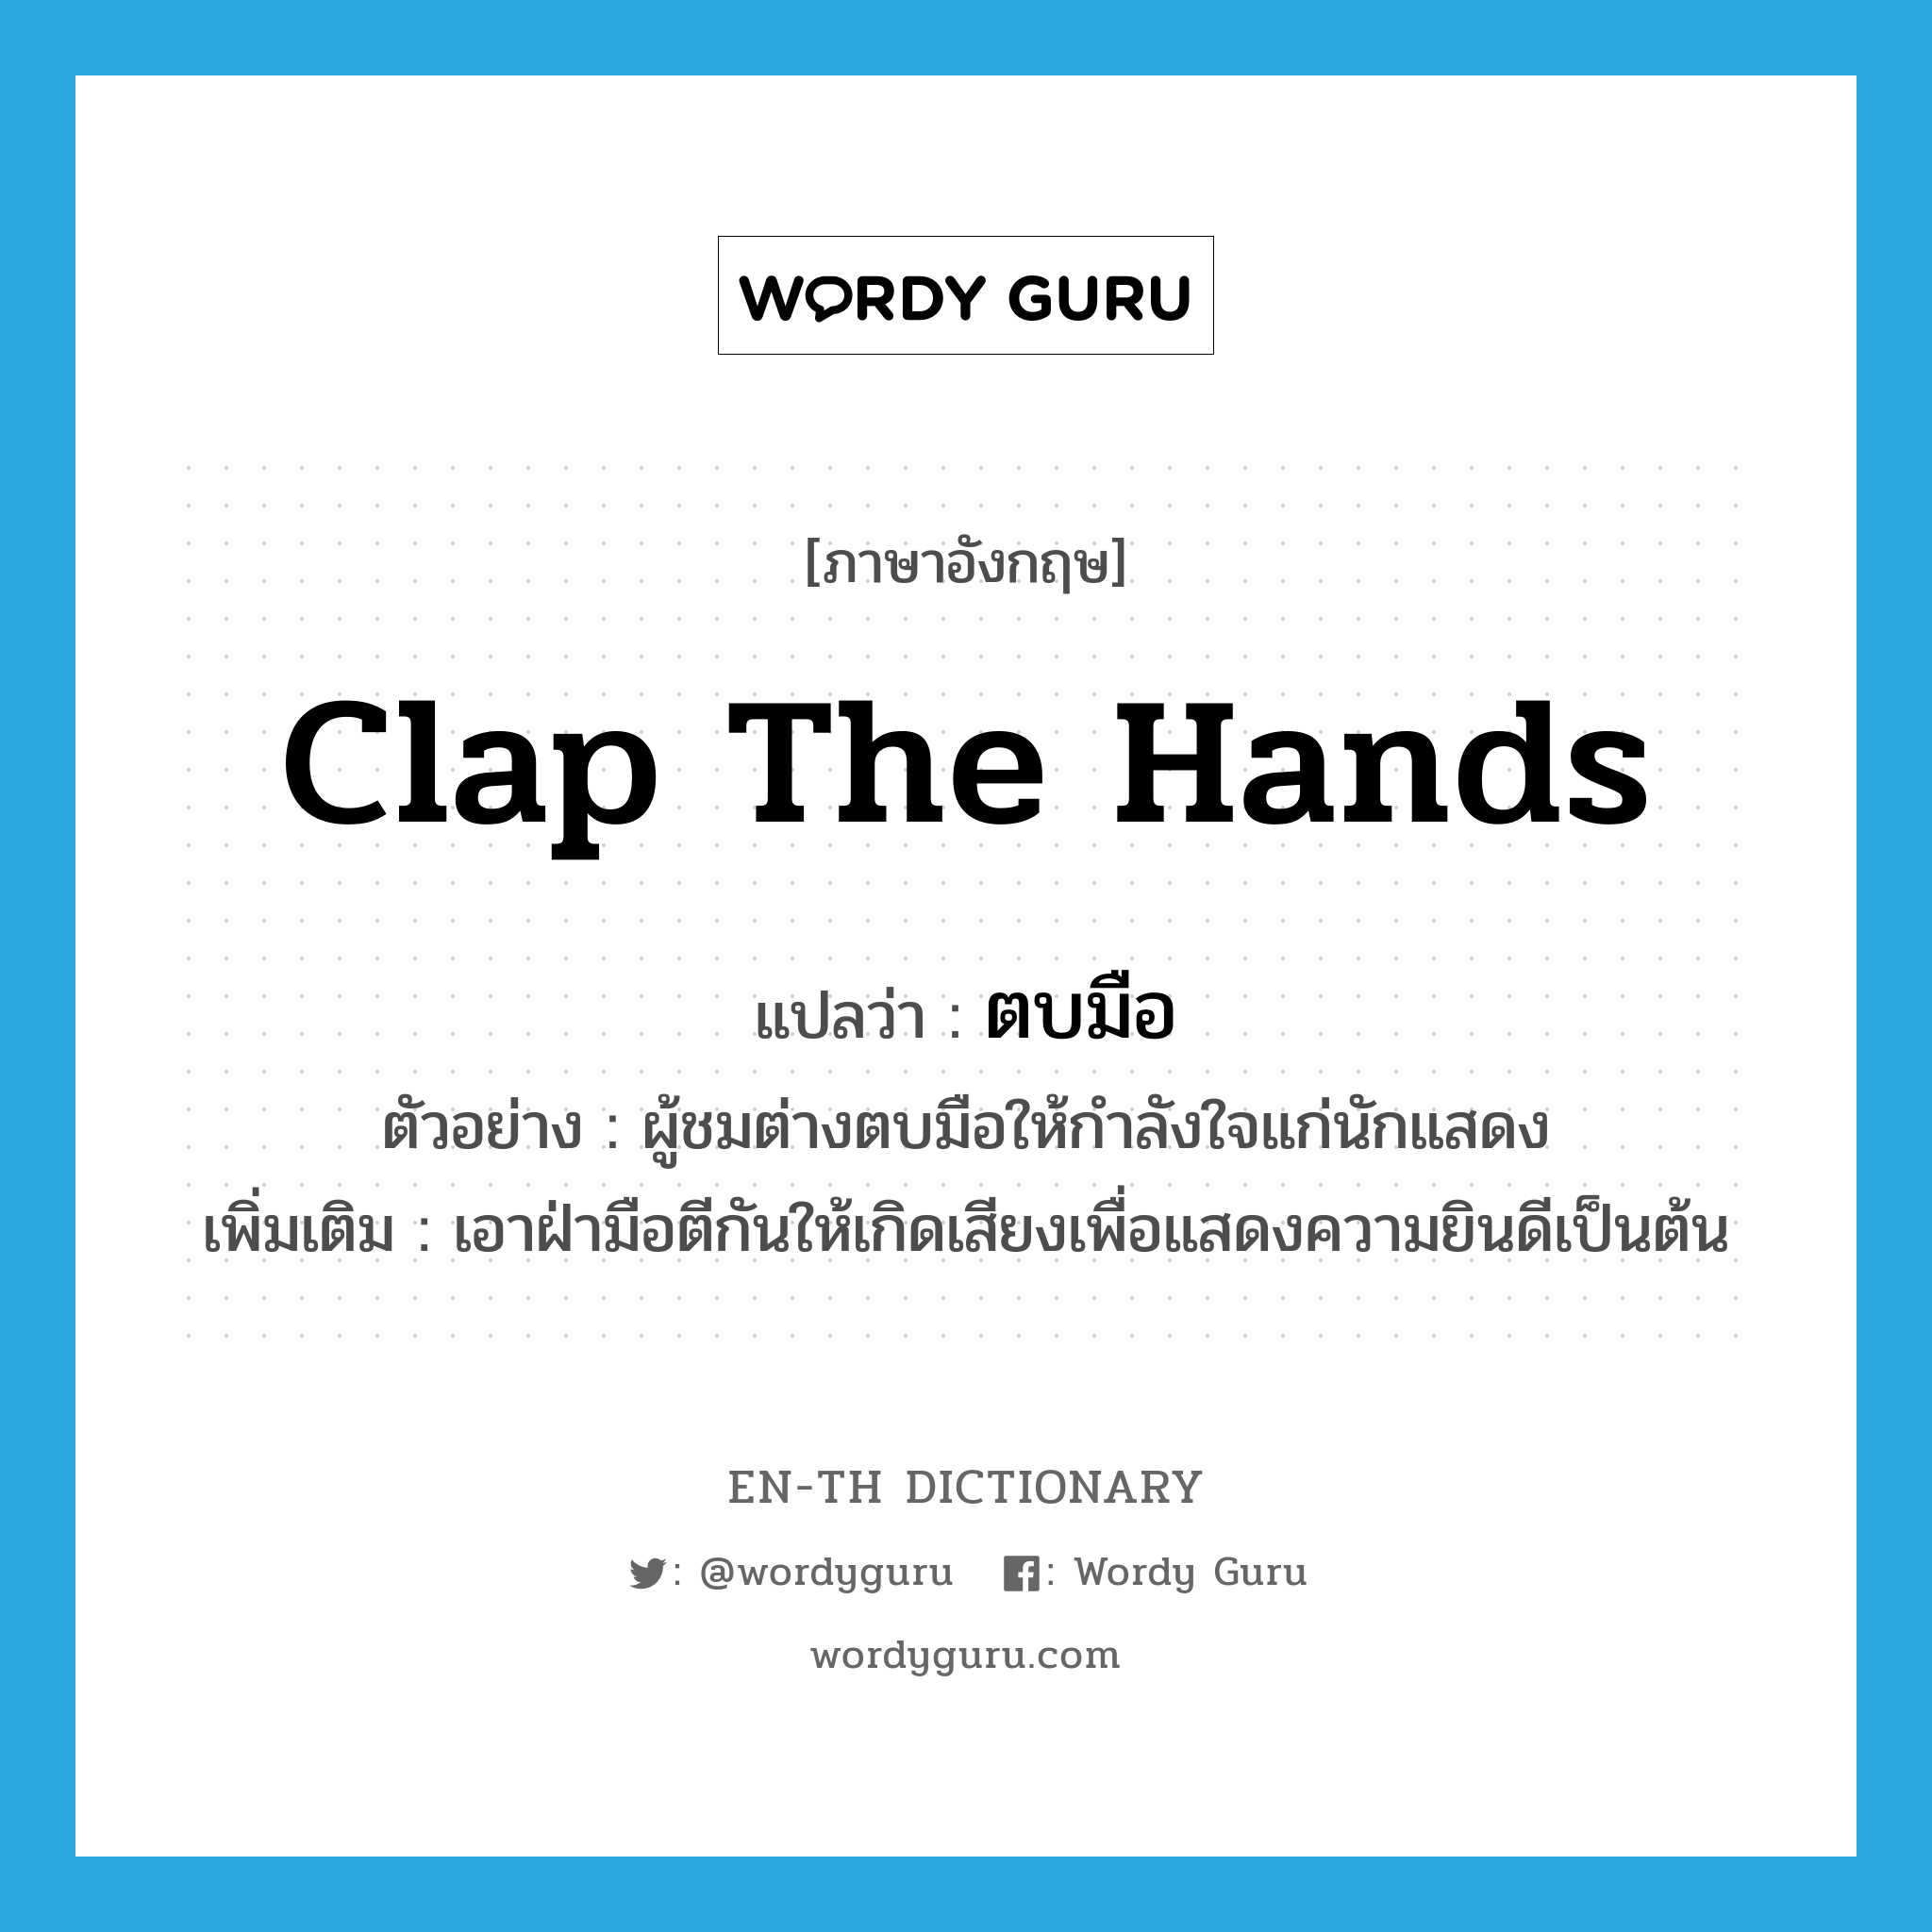 ตบมือ ภาษาอังกฤษ?, คำศัพท์ภาษาอังกฤษ ตบมือ แปลว่า clap the hands ประเภท V ตัวอย่าง ผู้ชมต่างตบมือให้กำลังใจแก่นักแสดง เพิ่มเติม เอาฝ่ามือตีกันให้เกิดเสียงเพื่อแสดงความยินดีเป็นต้น หมวด V